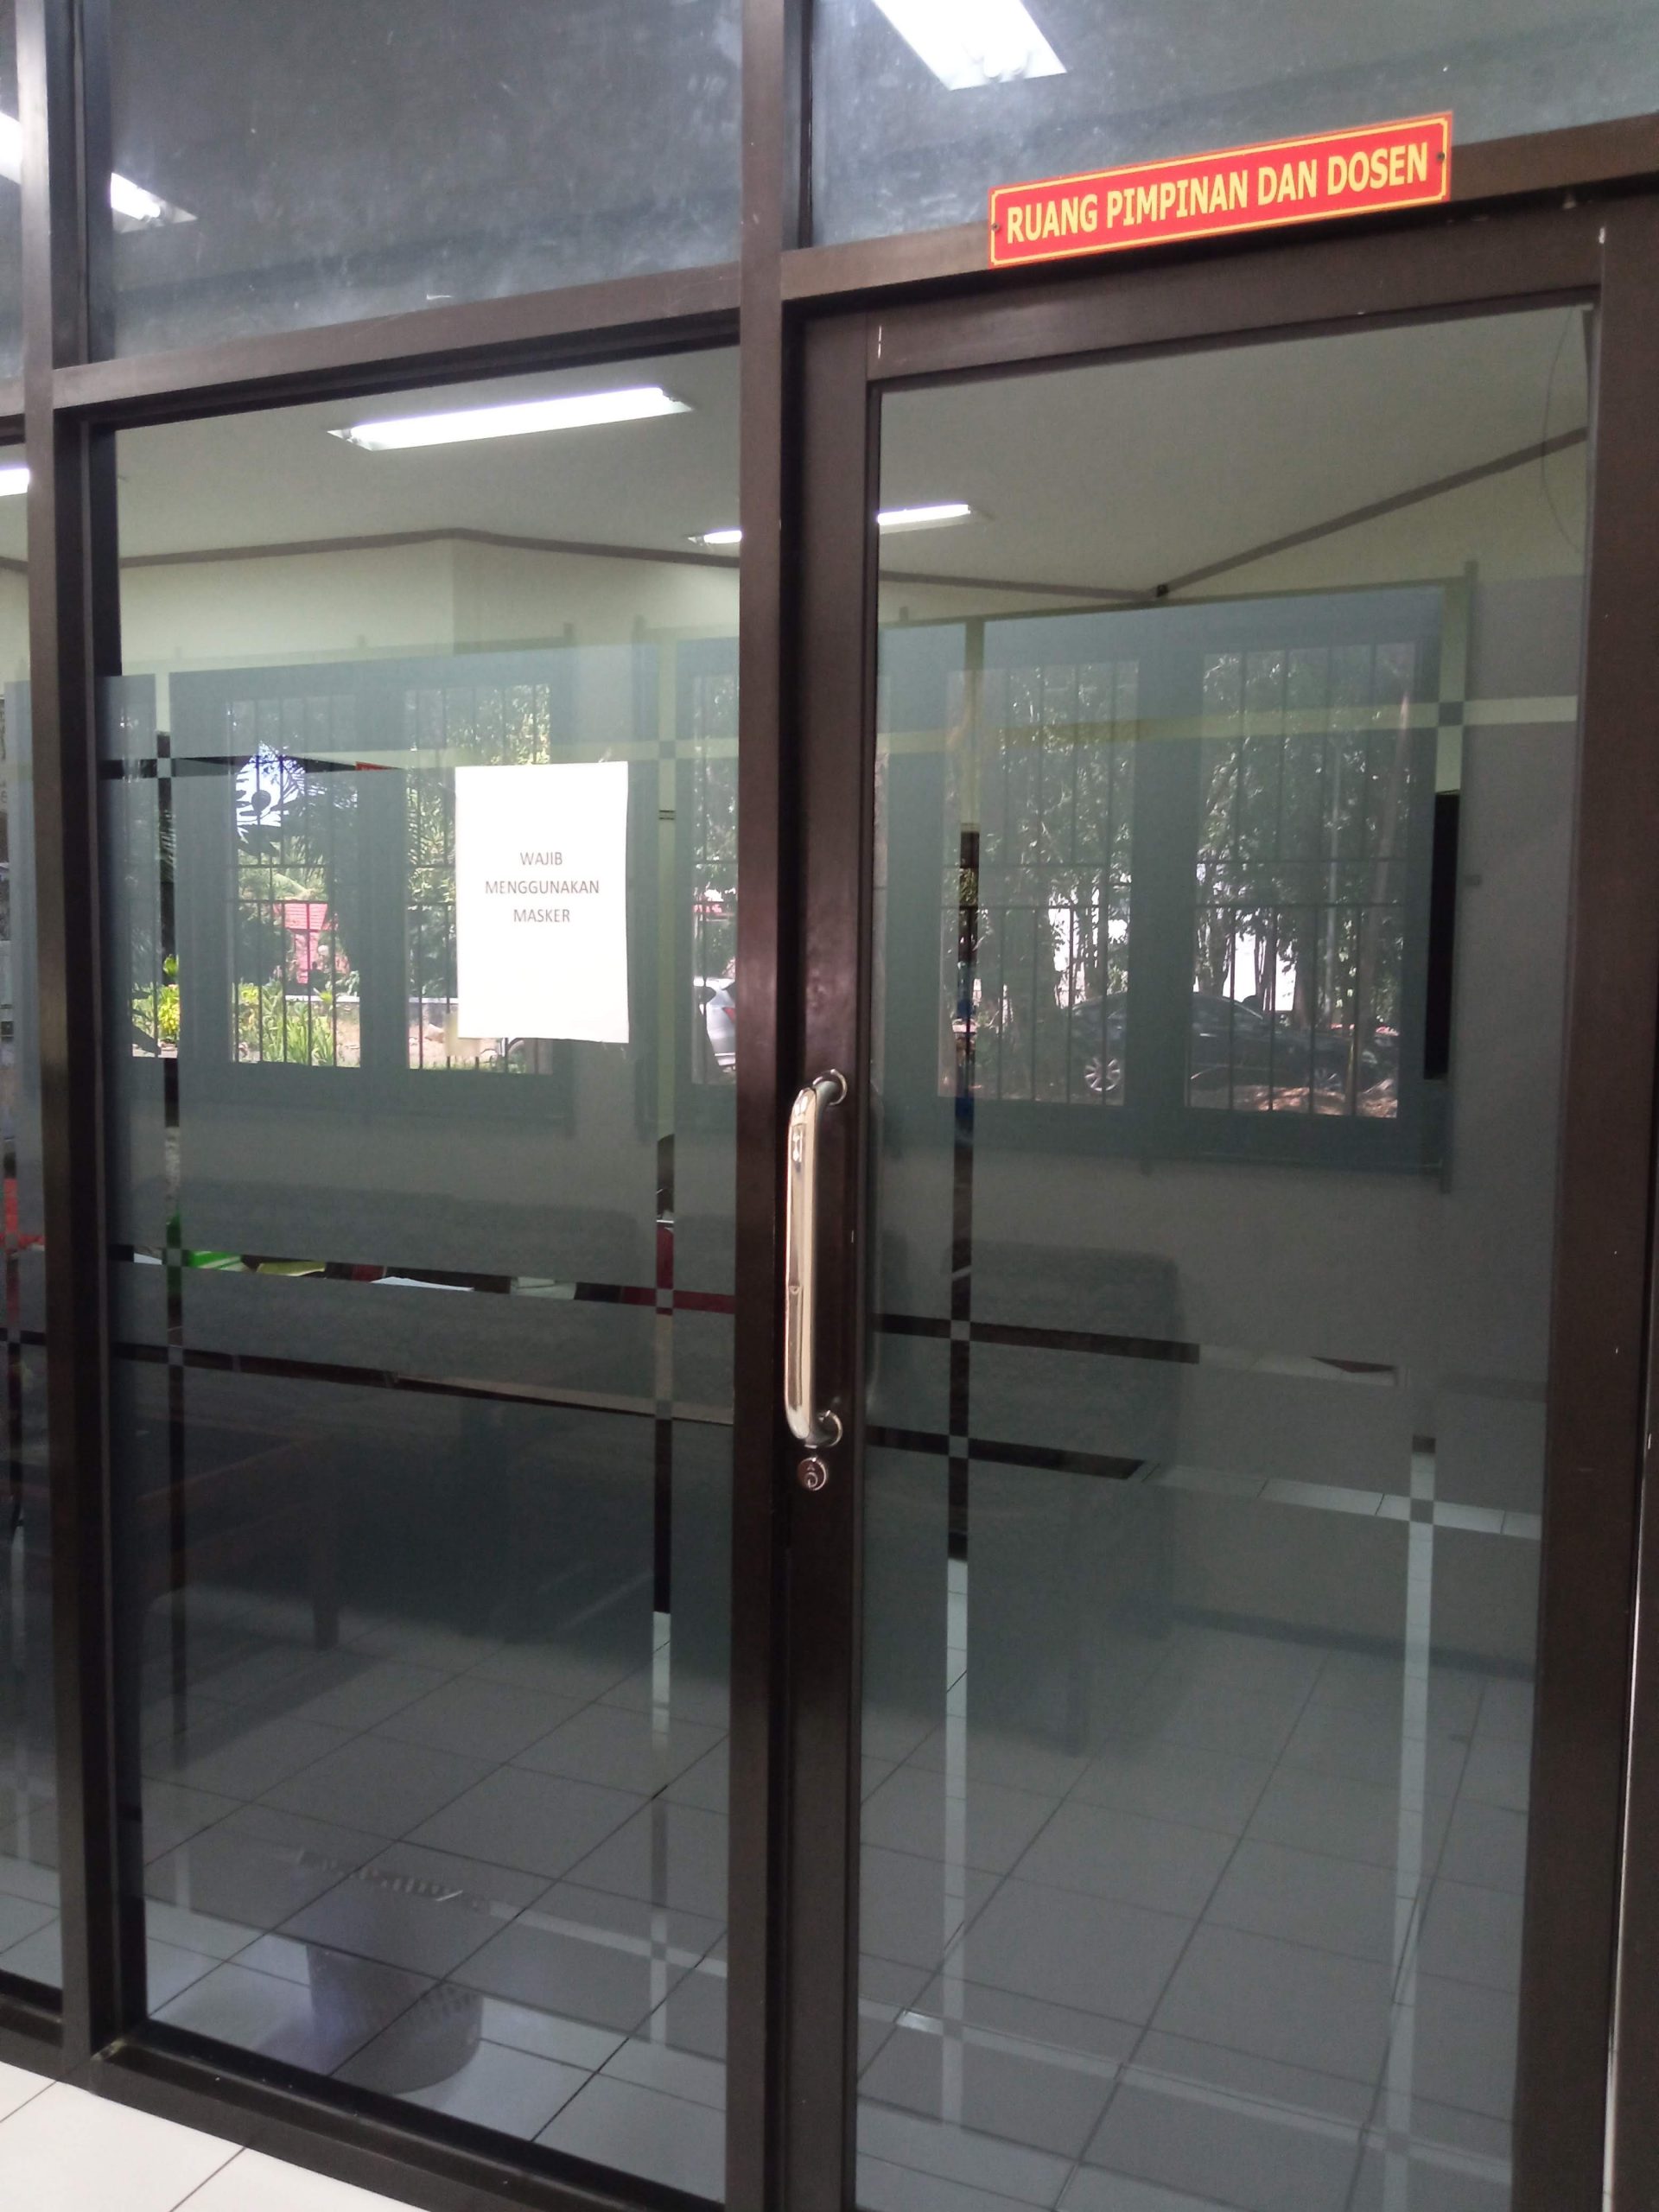 Ruang Pimpinan dan Dosen Departemen Sastra Indonesia FIB Unhas